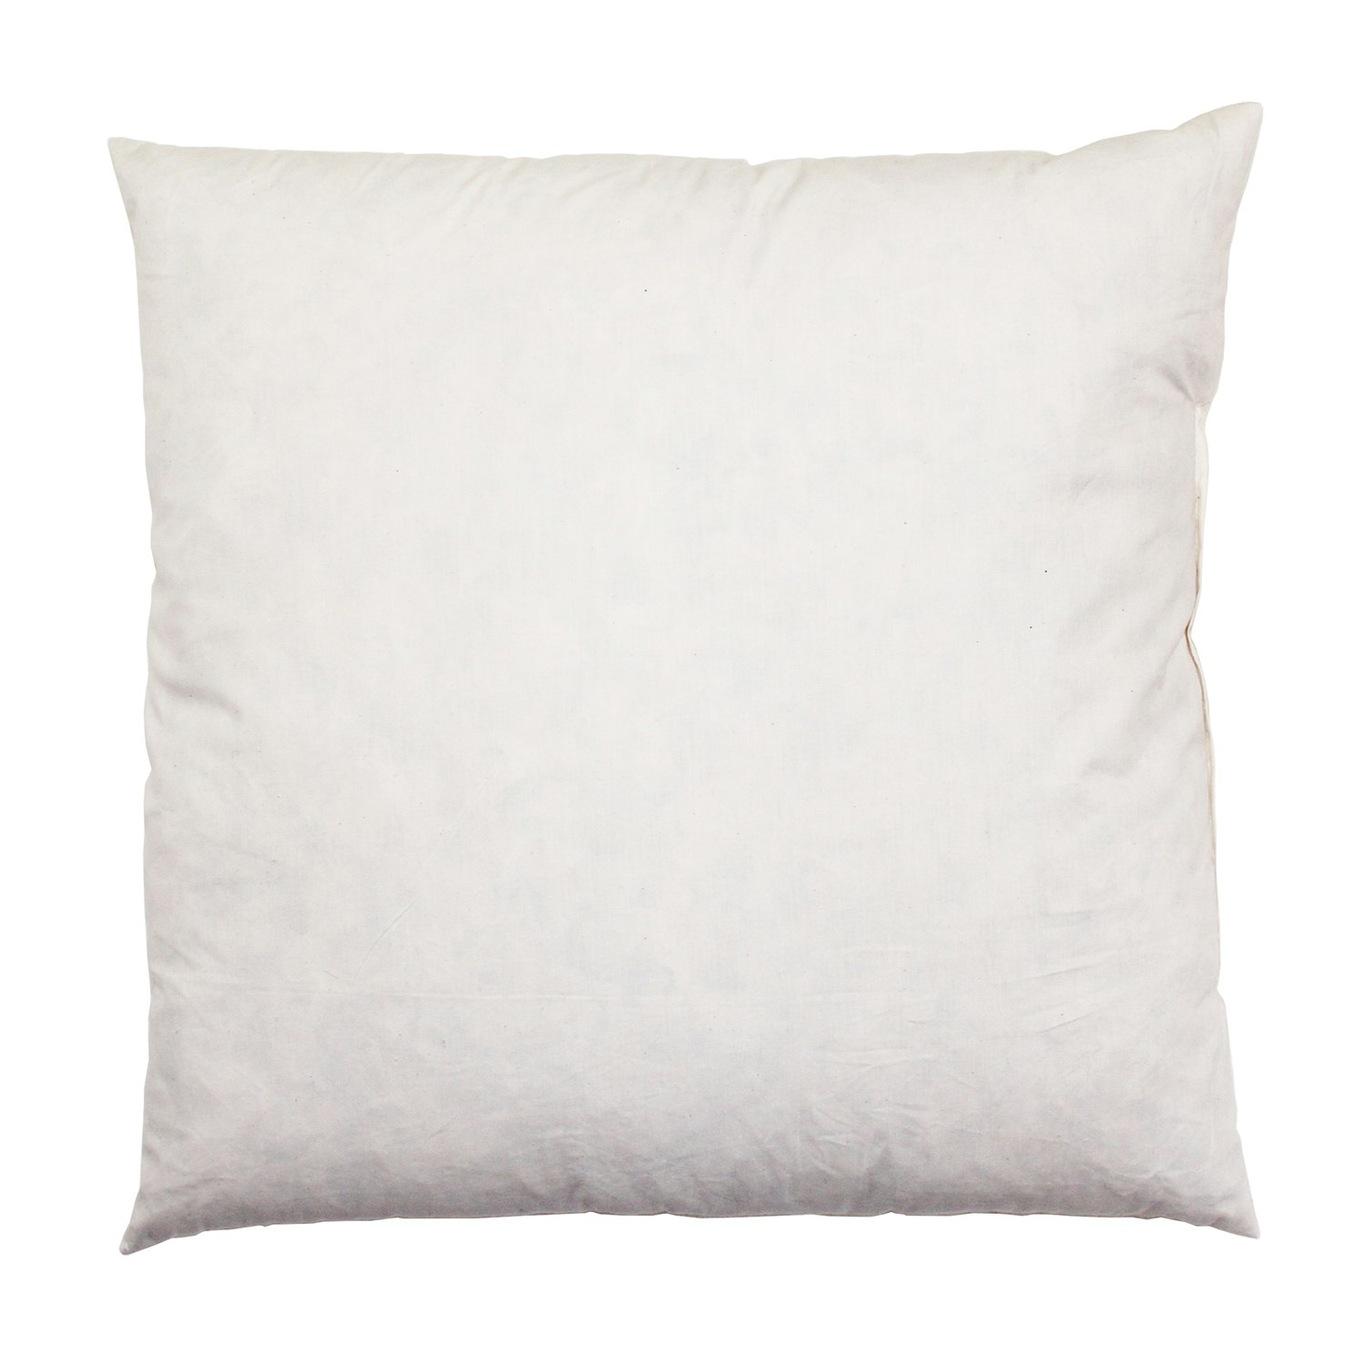 Inner Pillow, 45x45 cm